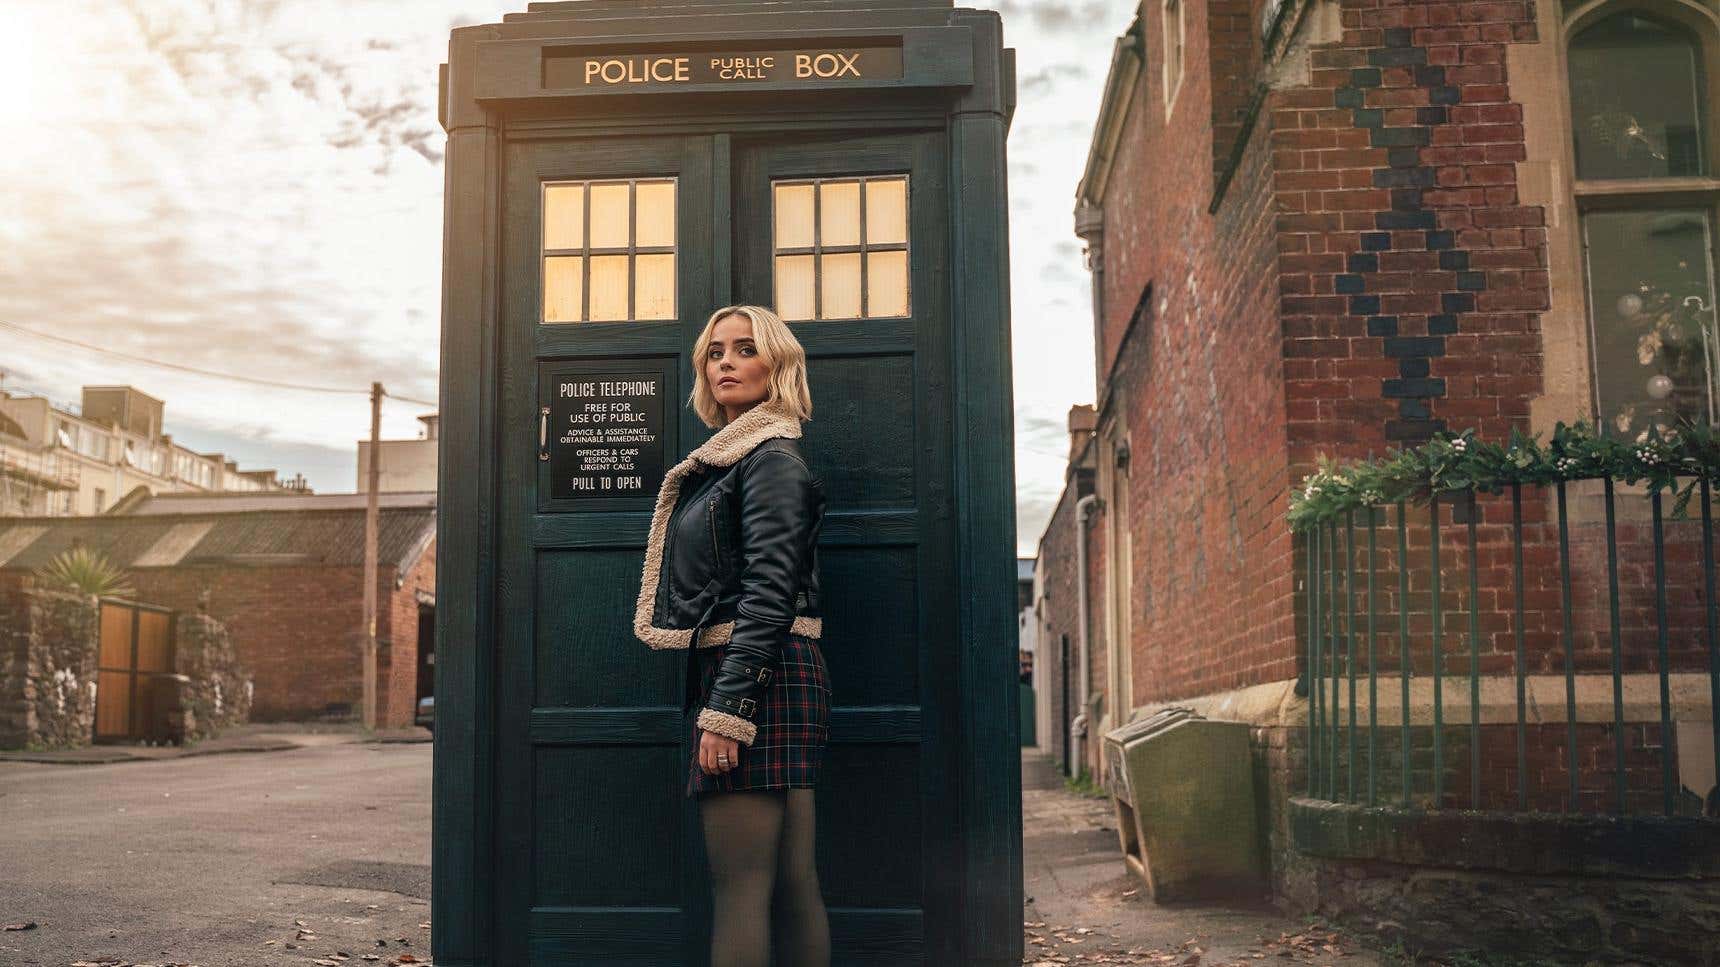 Doctor Who, Noel (ve Arkadaşlık) Büyülüdür başlıklı makale için resim